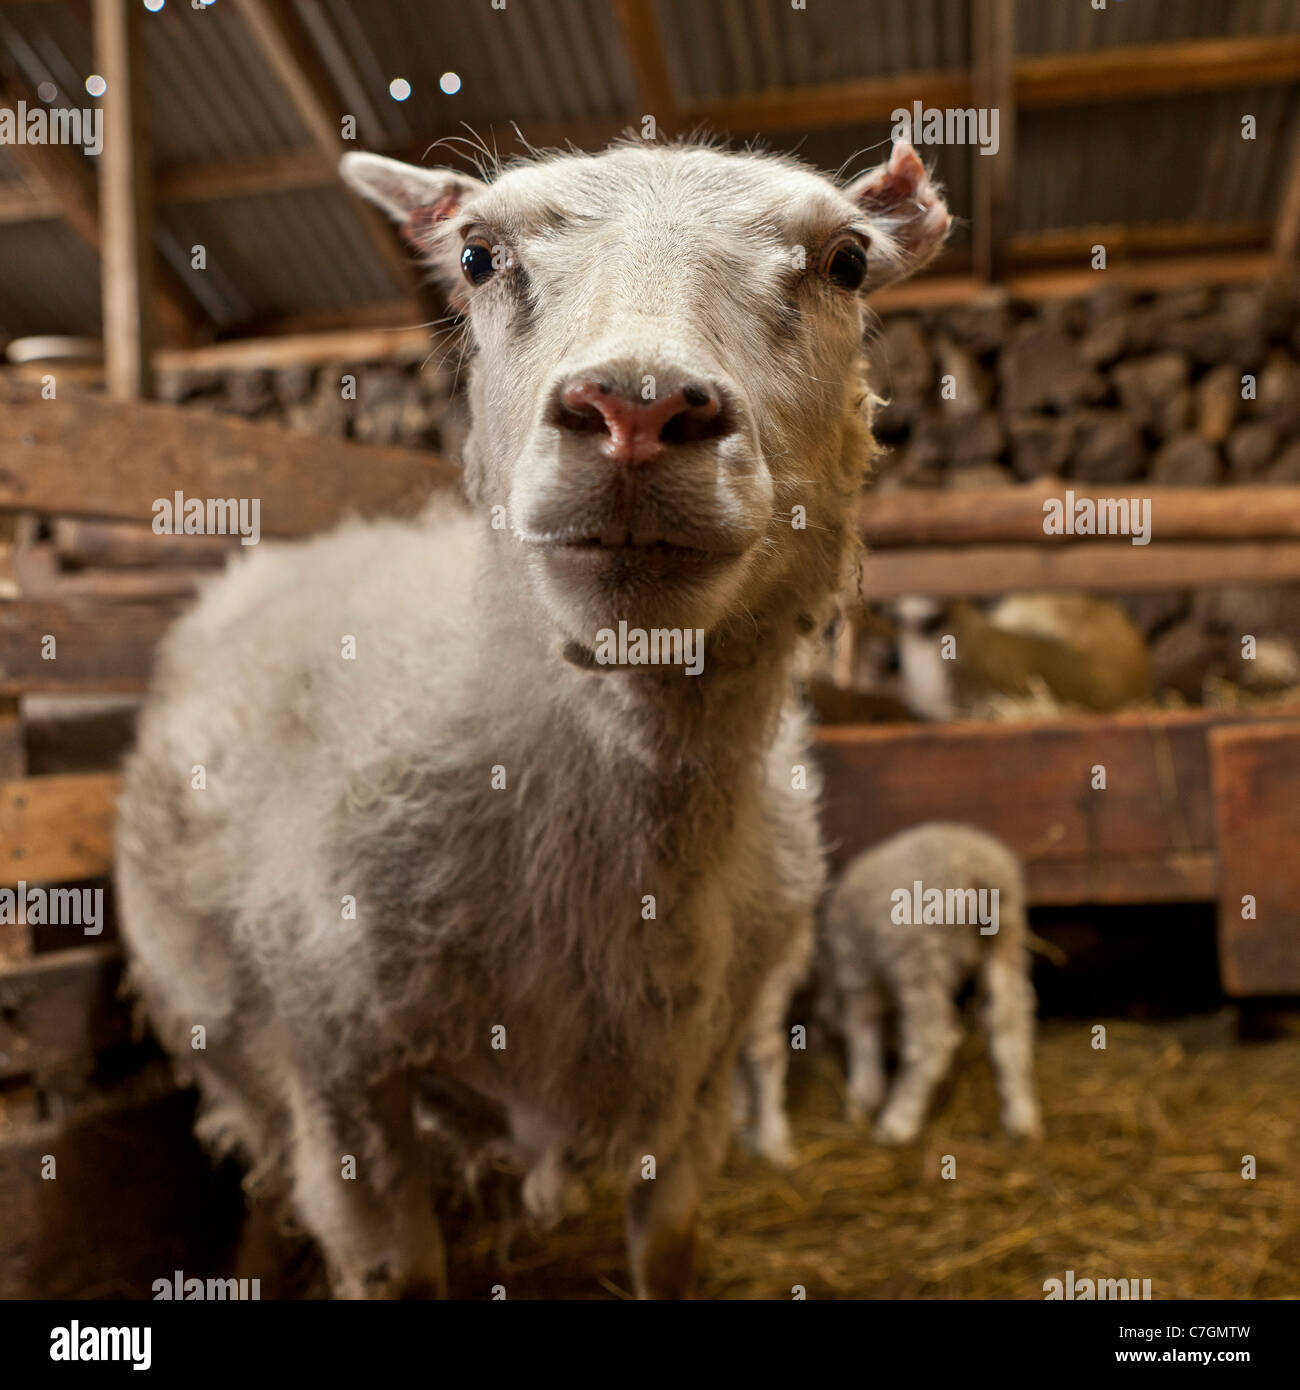 Sheep indoors, Iceland Stock Photo